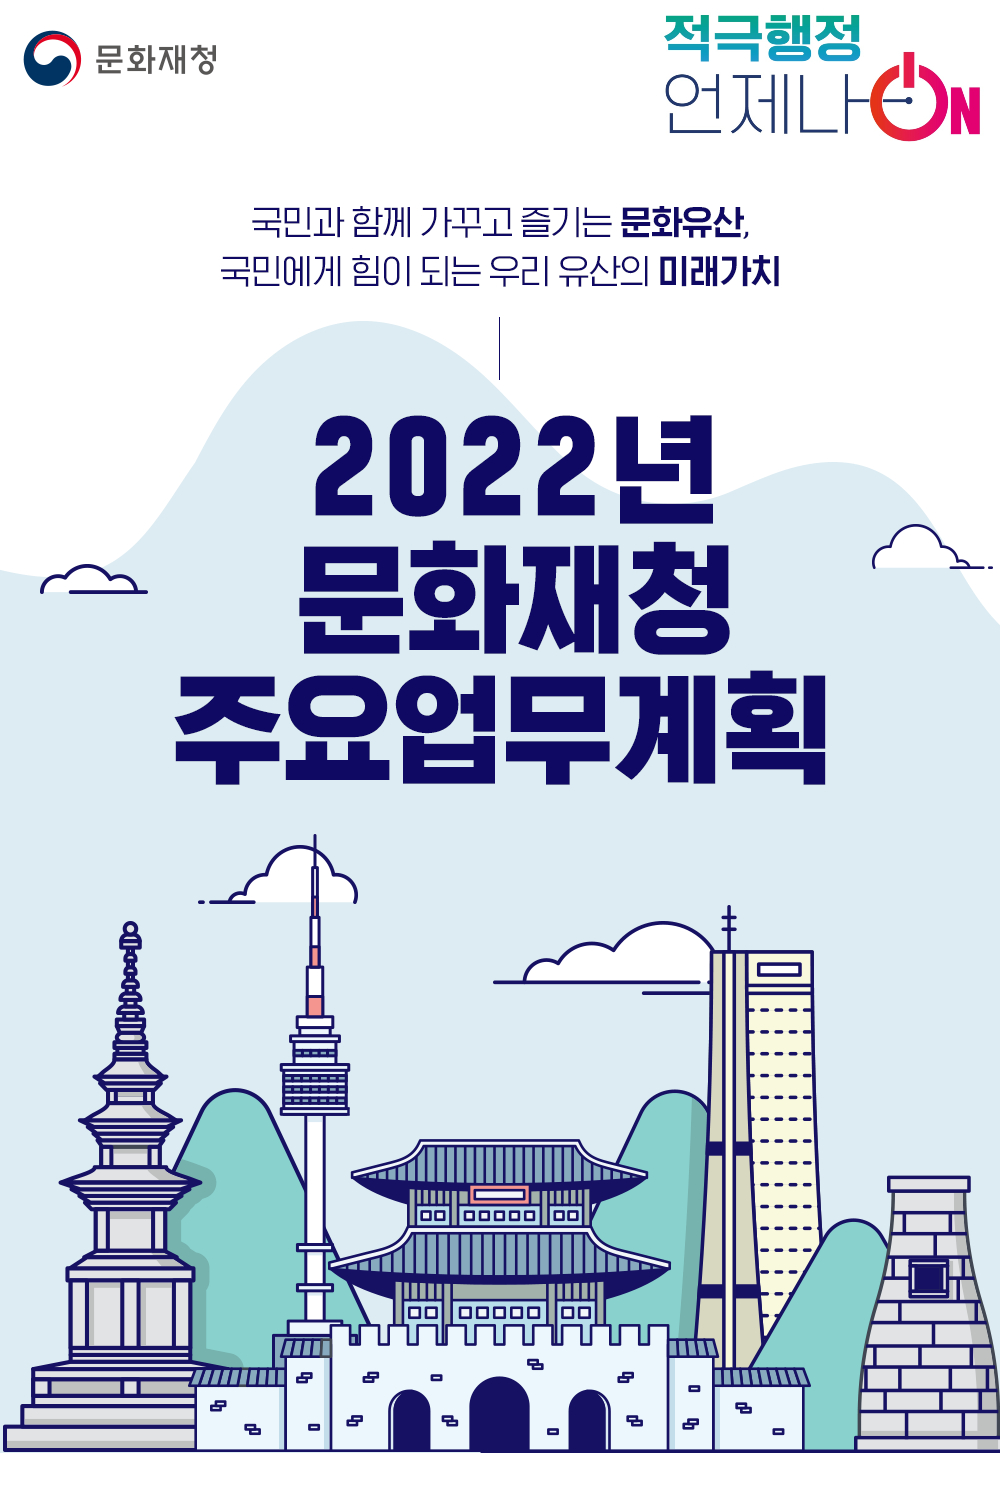 [문화재청] 2022년 문화재청 주요업무계획 관련사진 1 보기